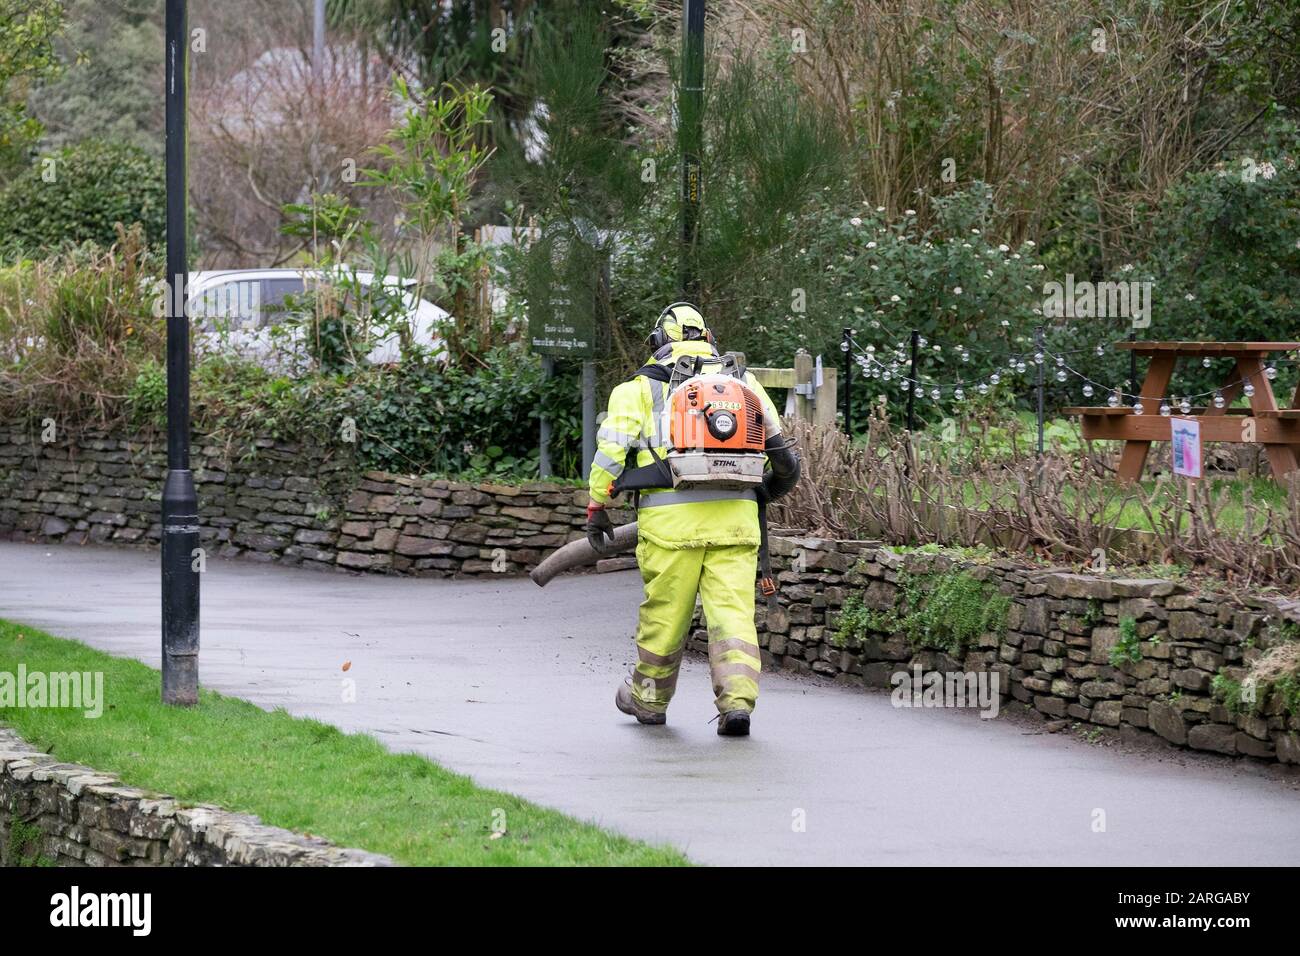 Un travailleur portant des vêtements haute visibilité et utilisant un souffleur de feuilles Stihl à Trenance Park à Newquay, en Cornwall. Banque D'Images